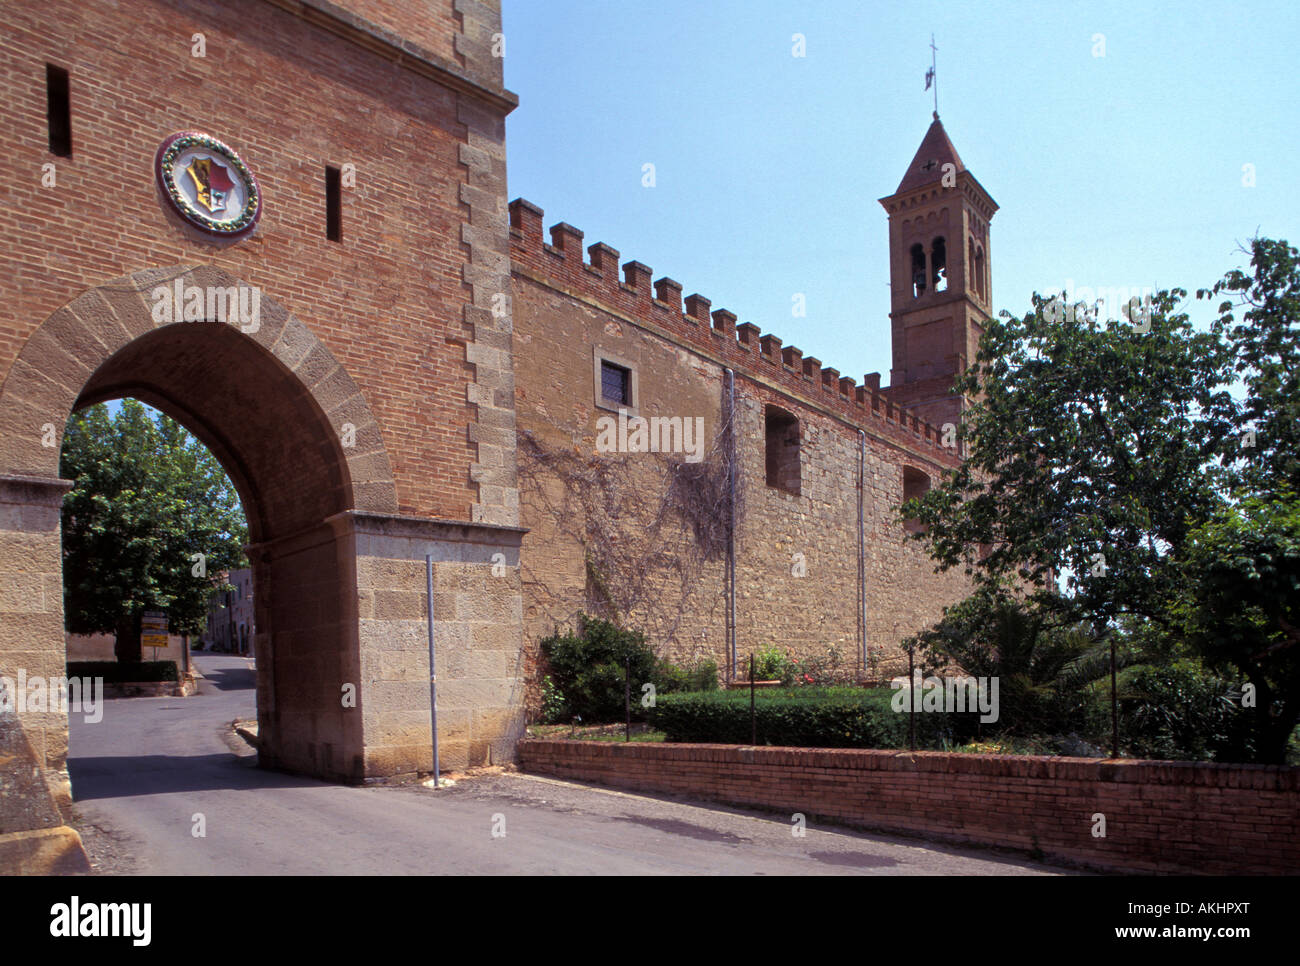 Conti della Gherardesca castle, Bolgheri, Tuscany, Italy Stock Photo